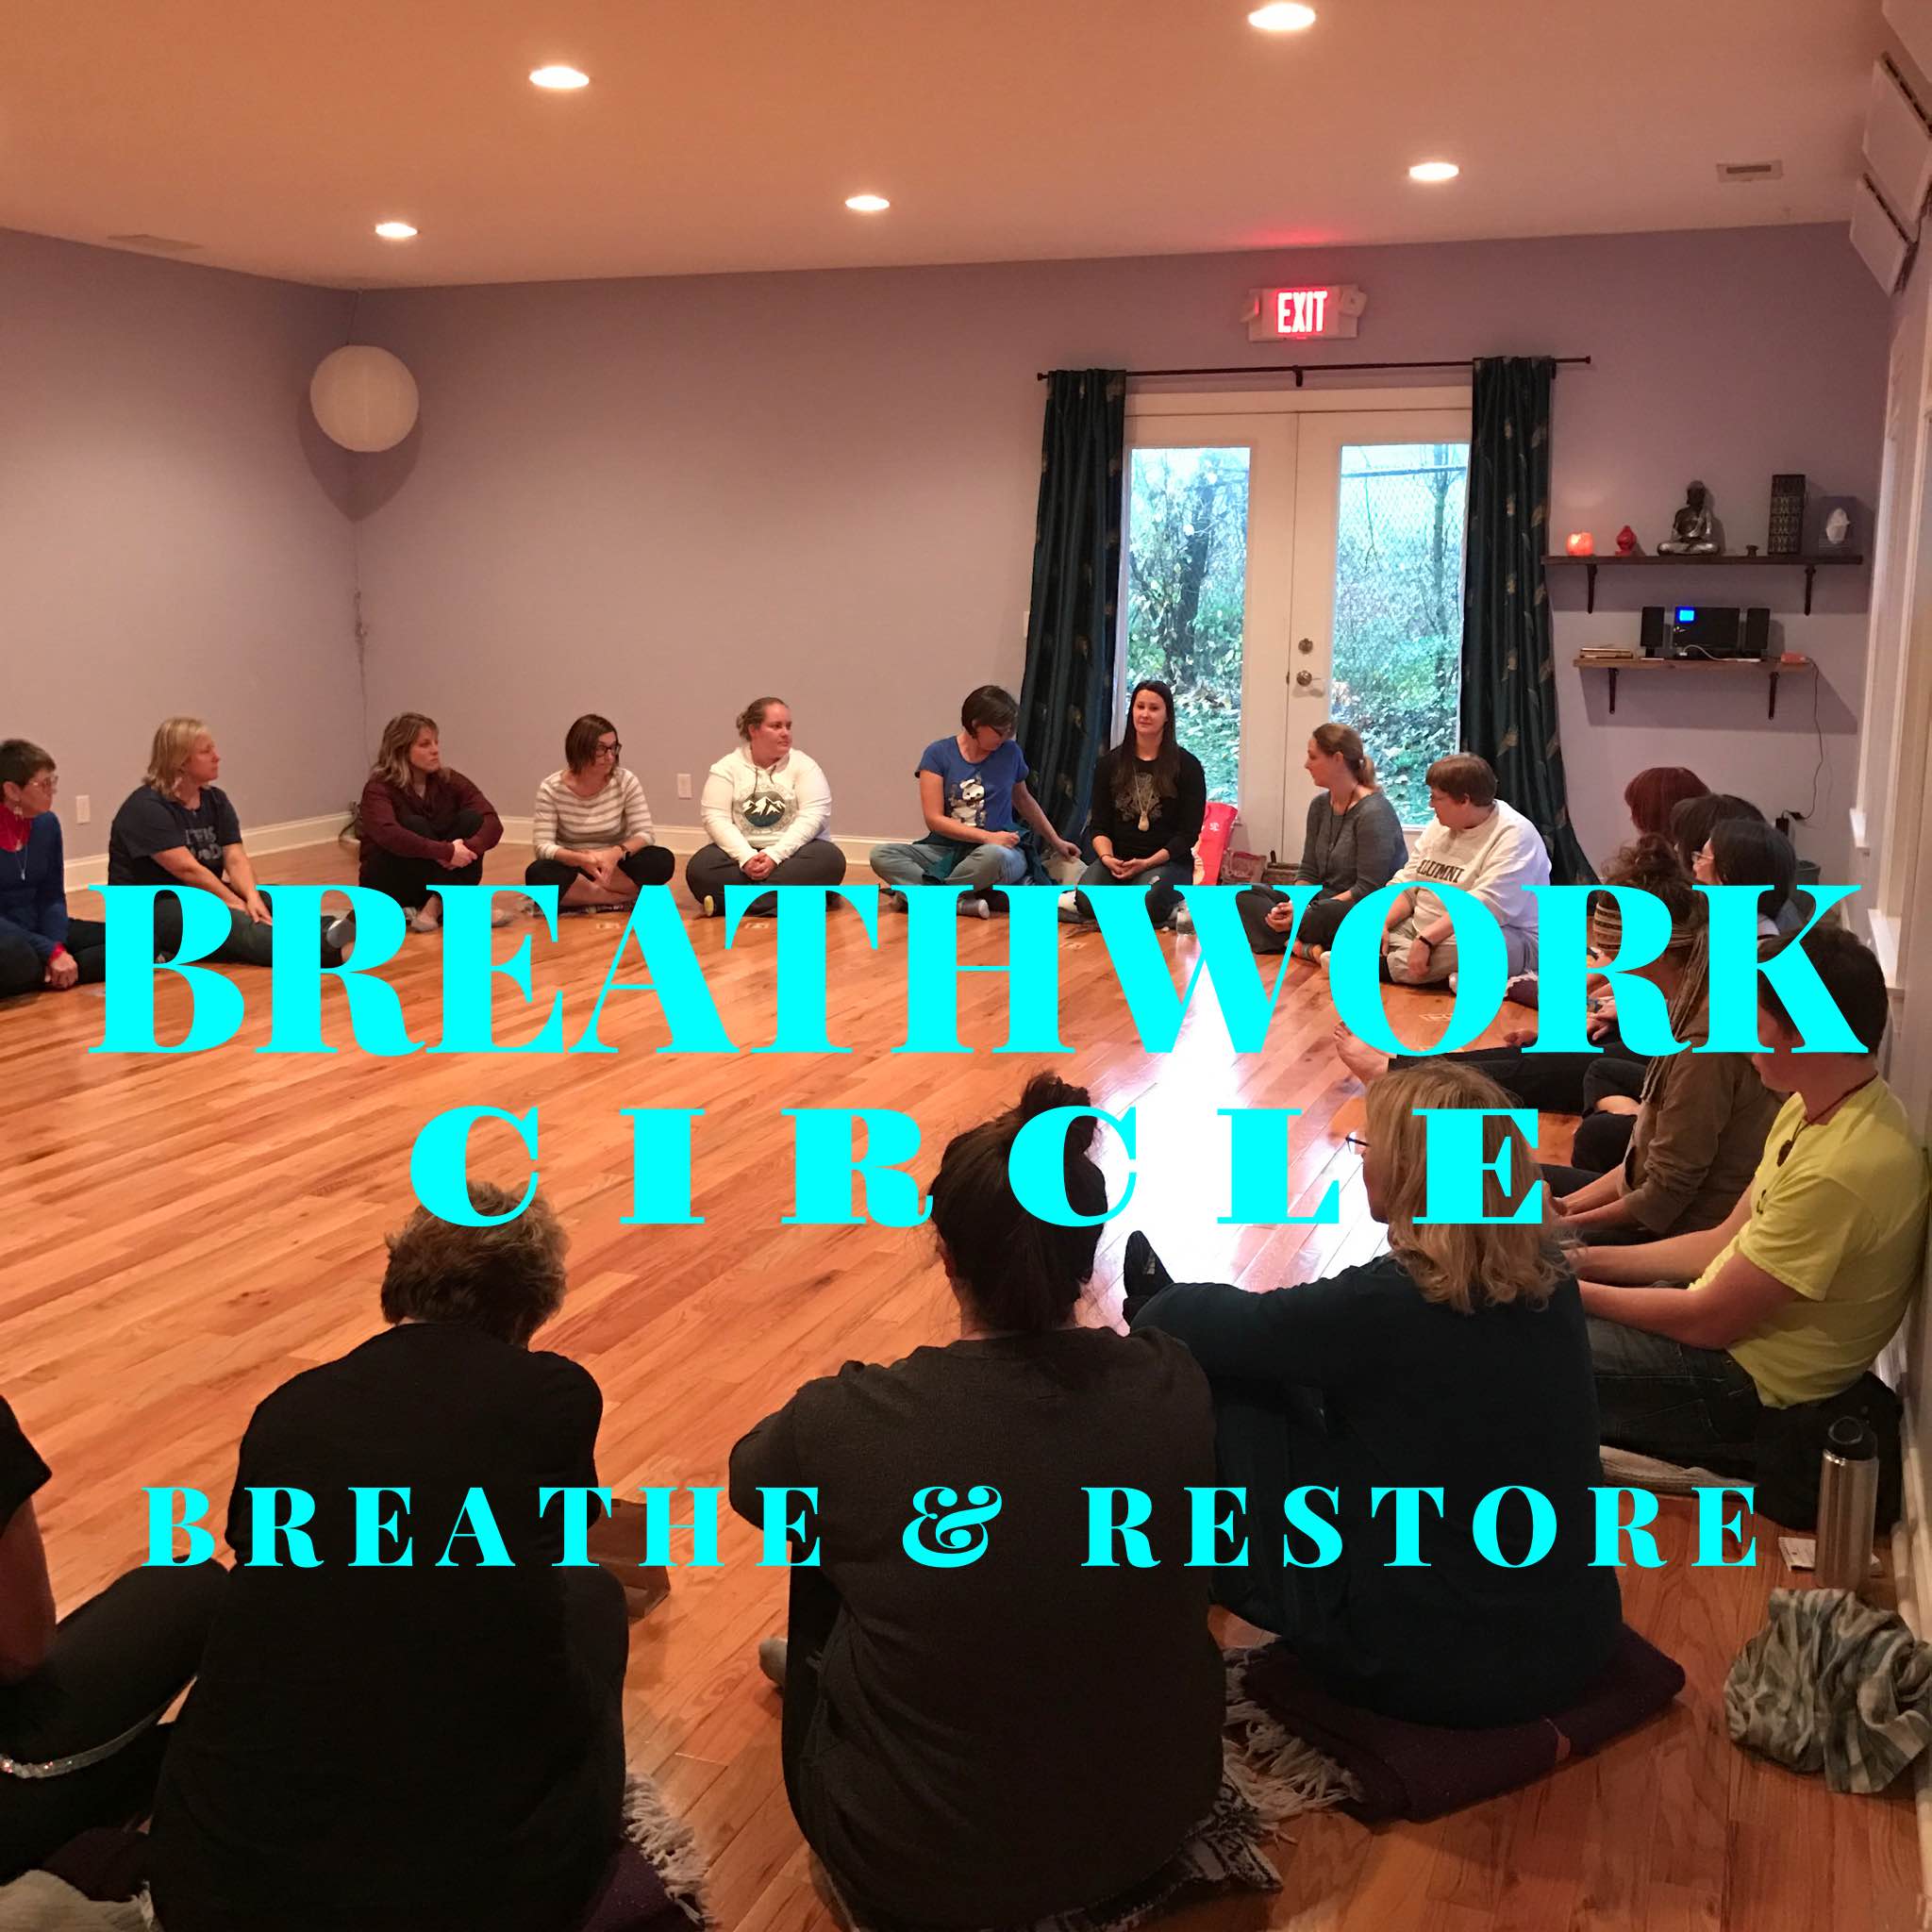 breathwork circle - breathe & restore - Bliss Bliss Bliss